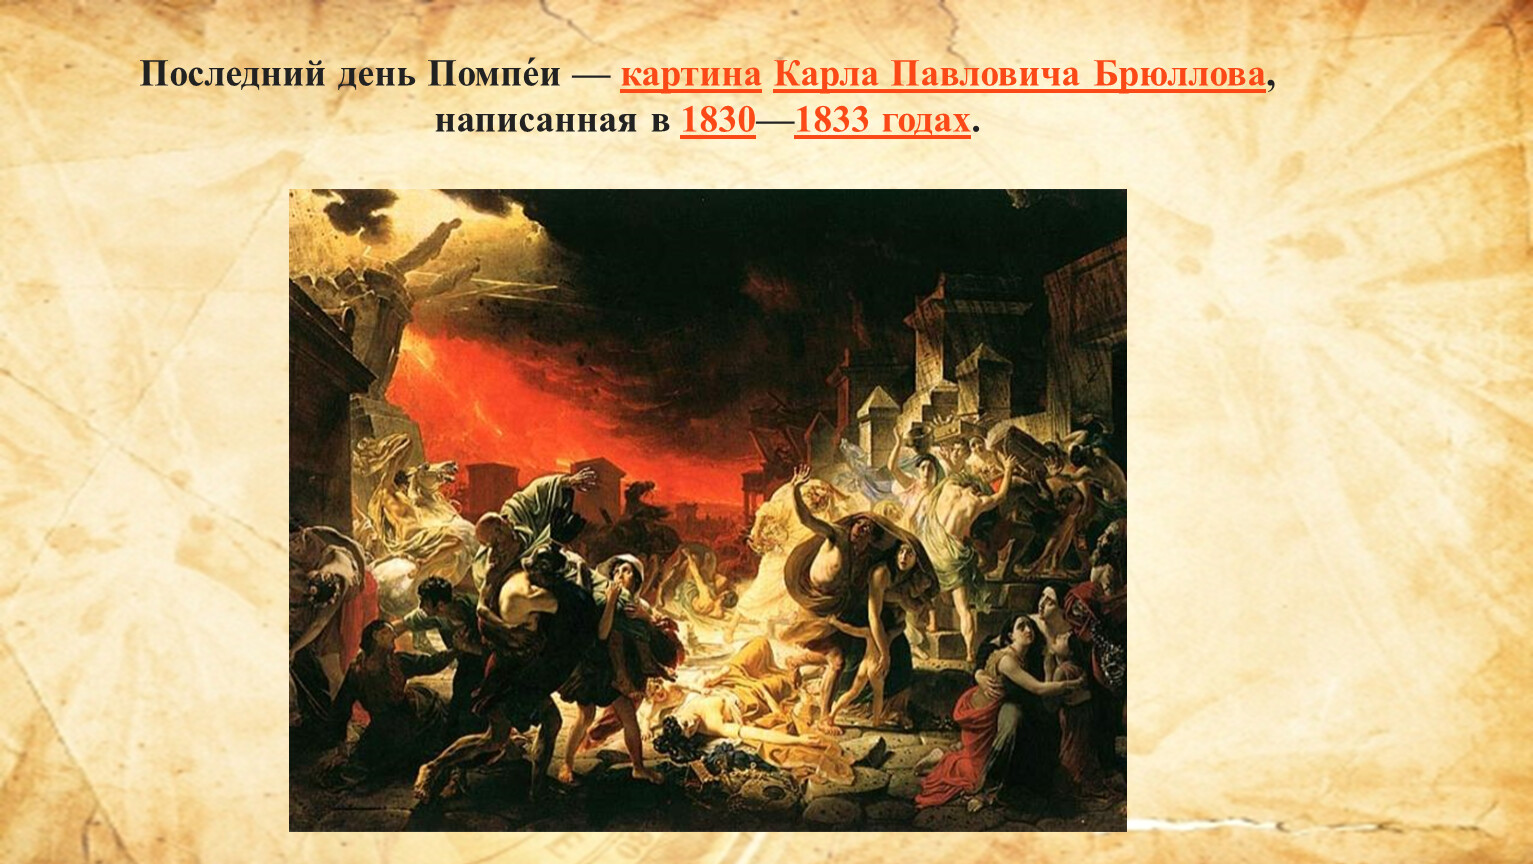 Карл Павлович Брюллов. Последний день Помпеи. 1830-1833.